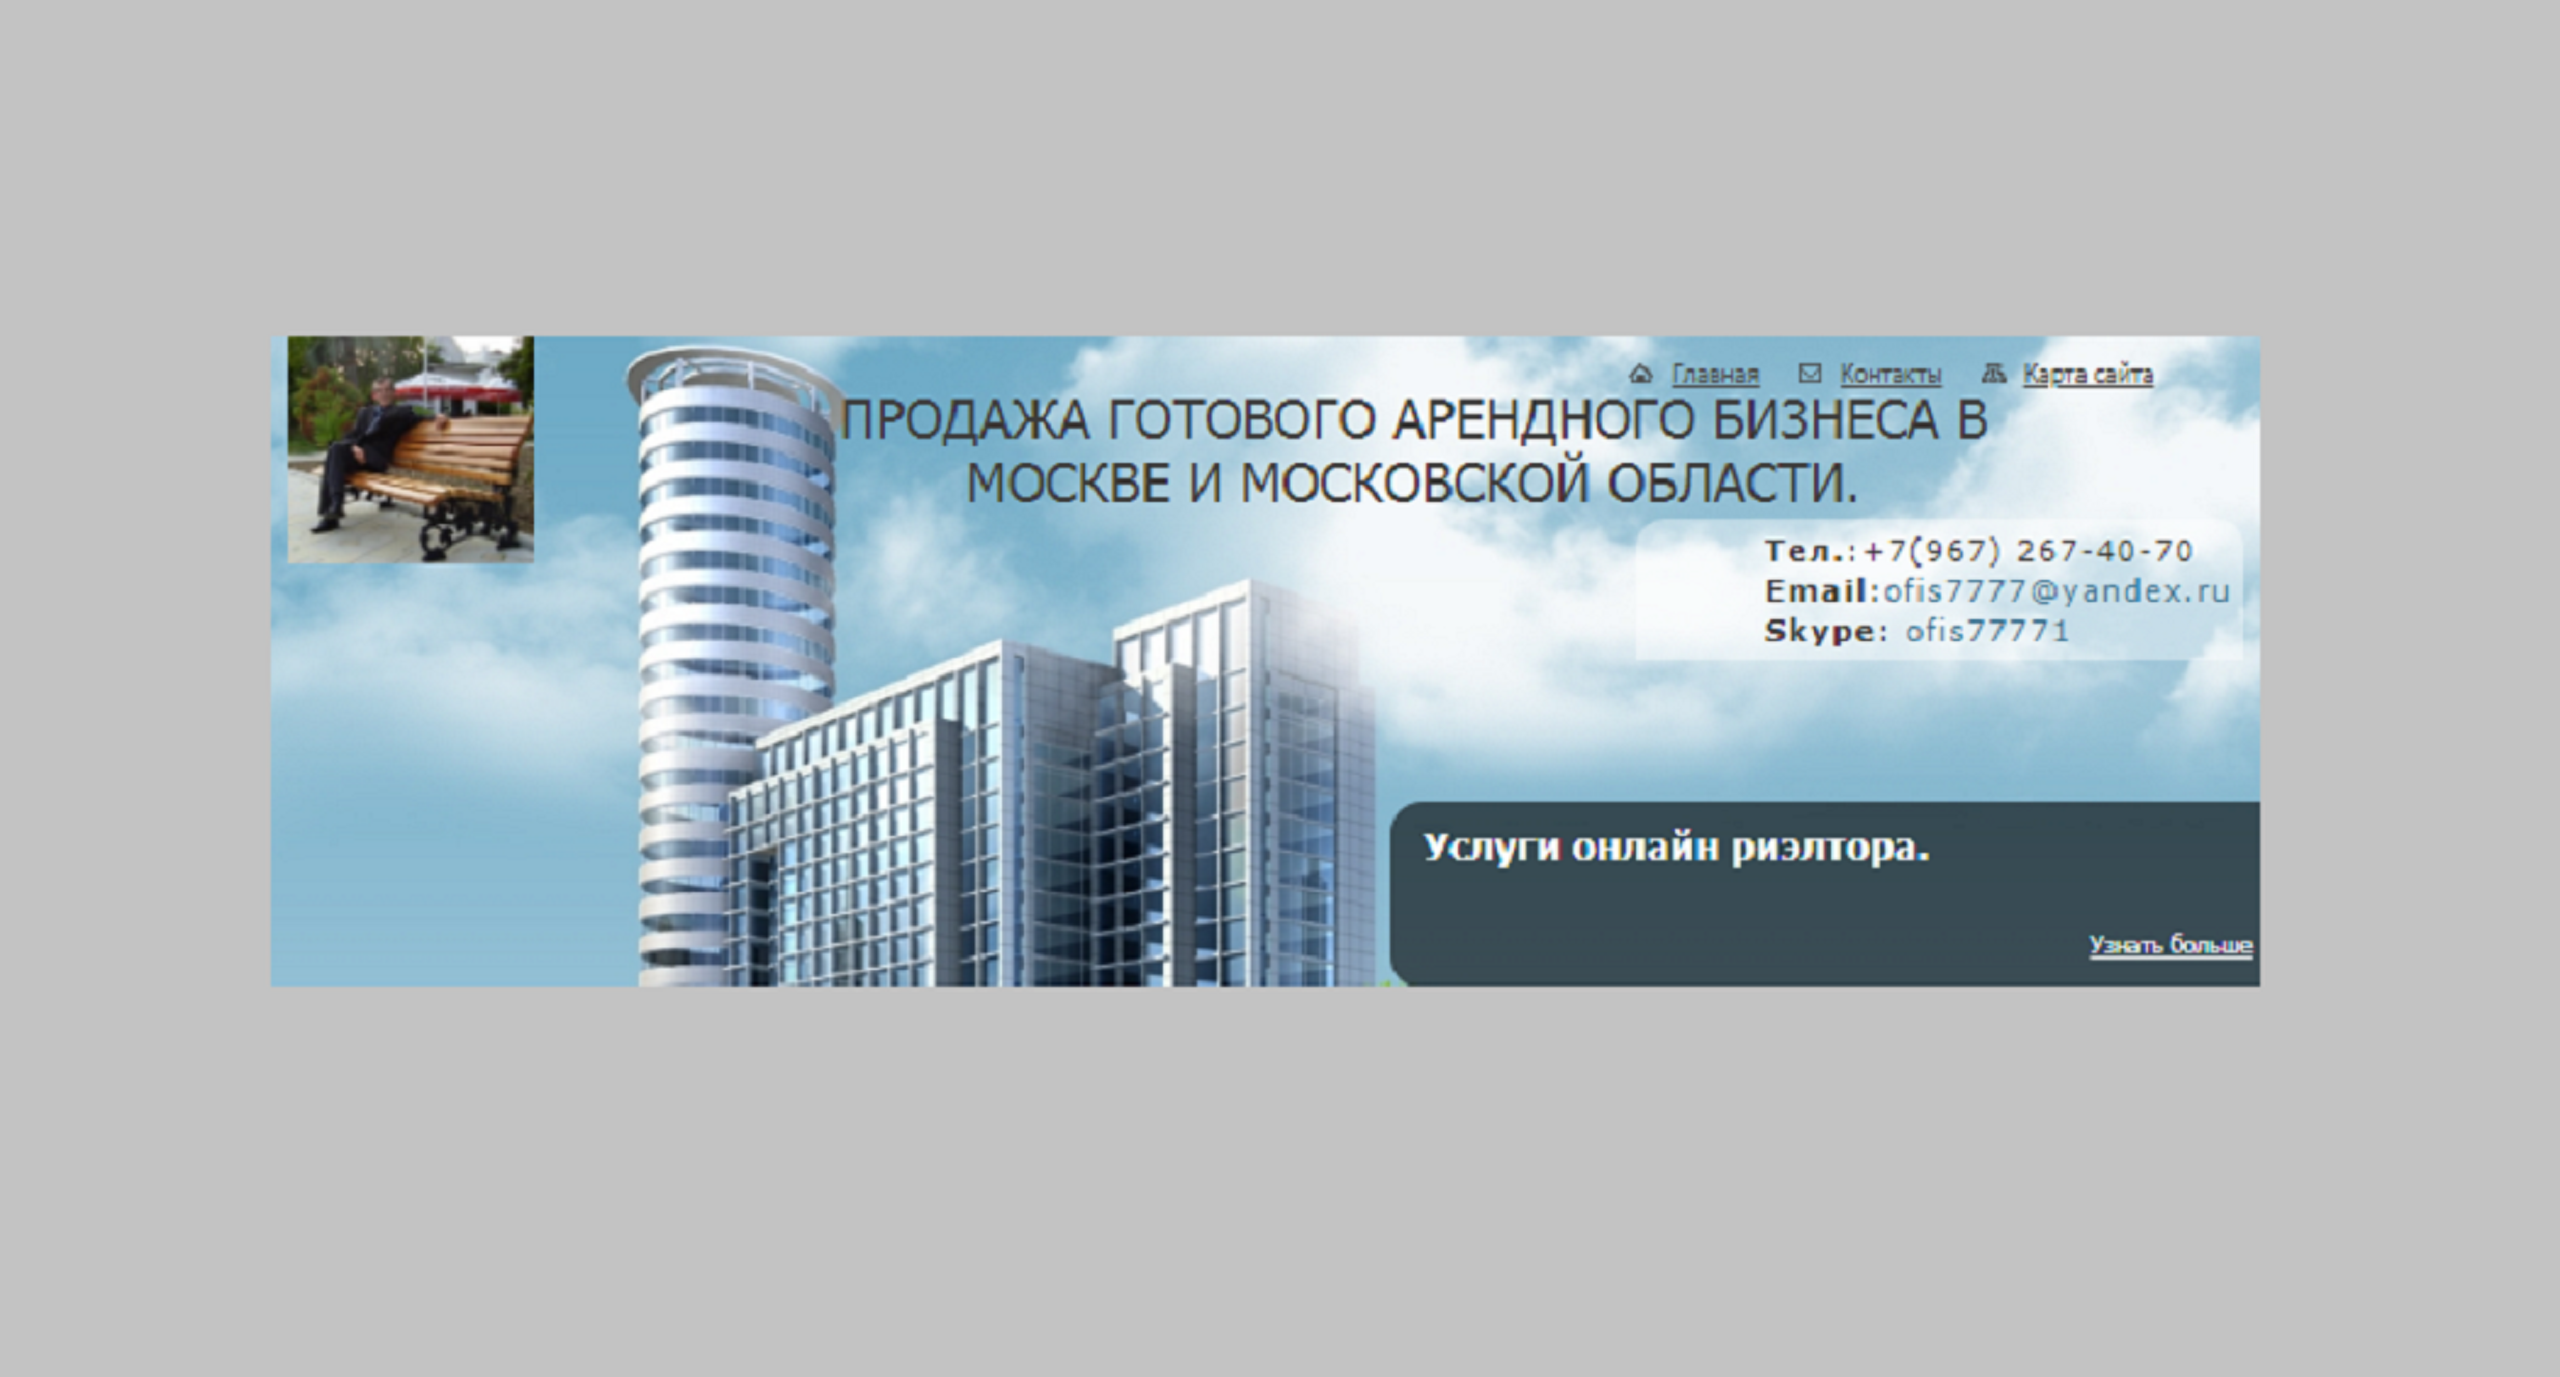 Собственники недвижимости москвы. Презентация для готового арендного бизнеса. Самый большой собственник недвижимости Москвы.